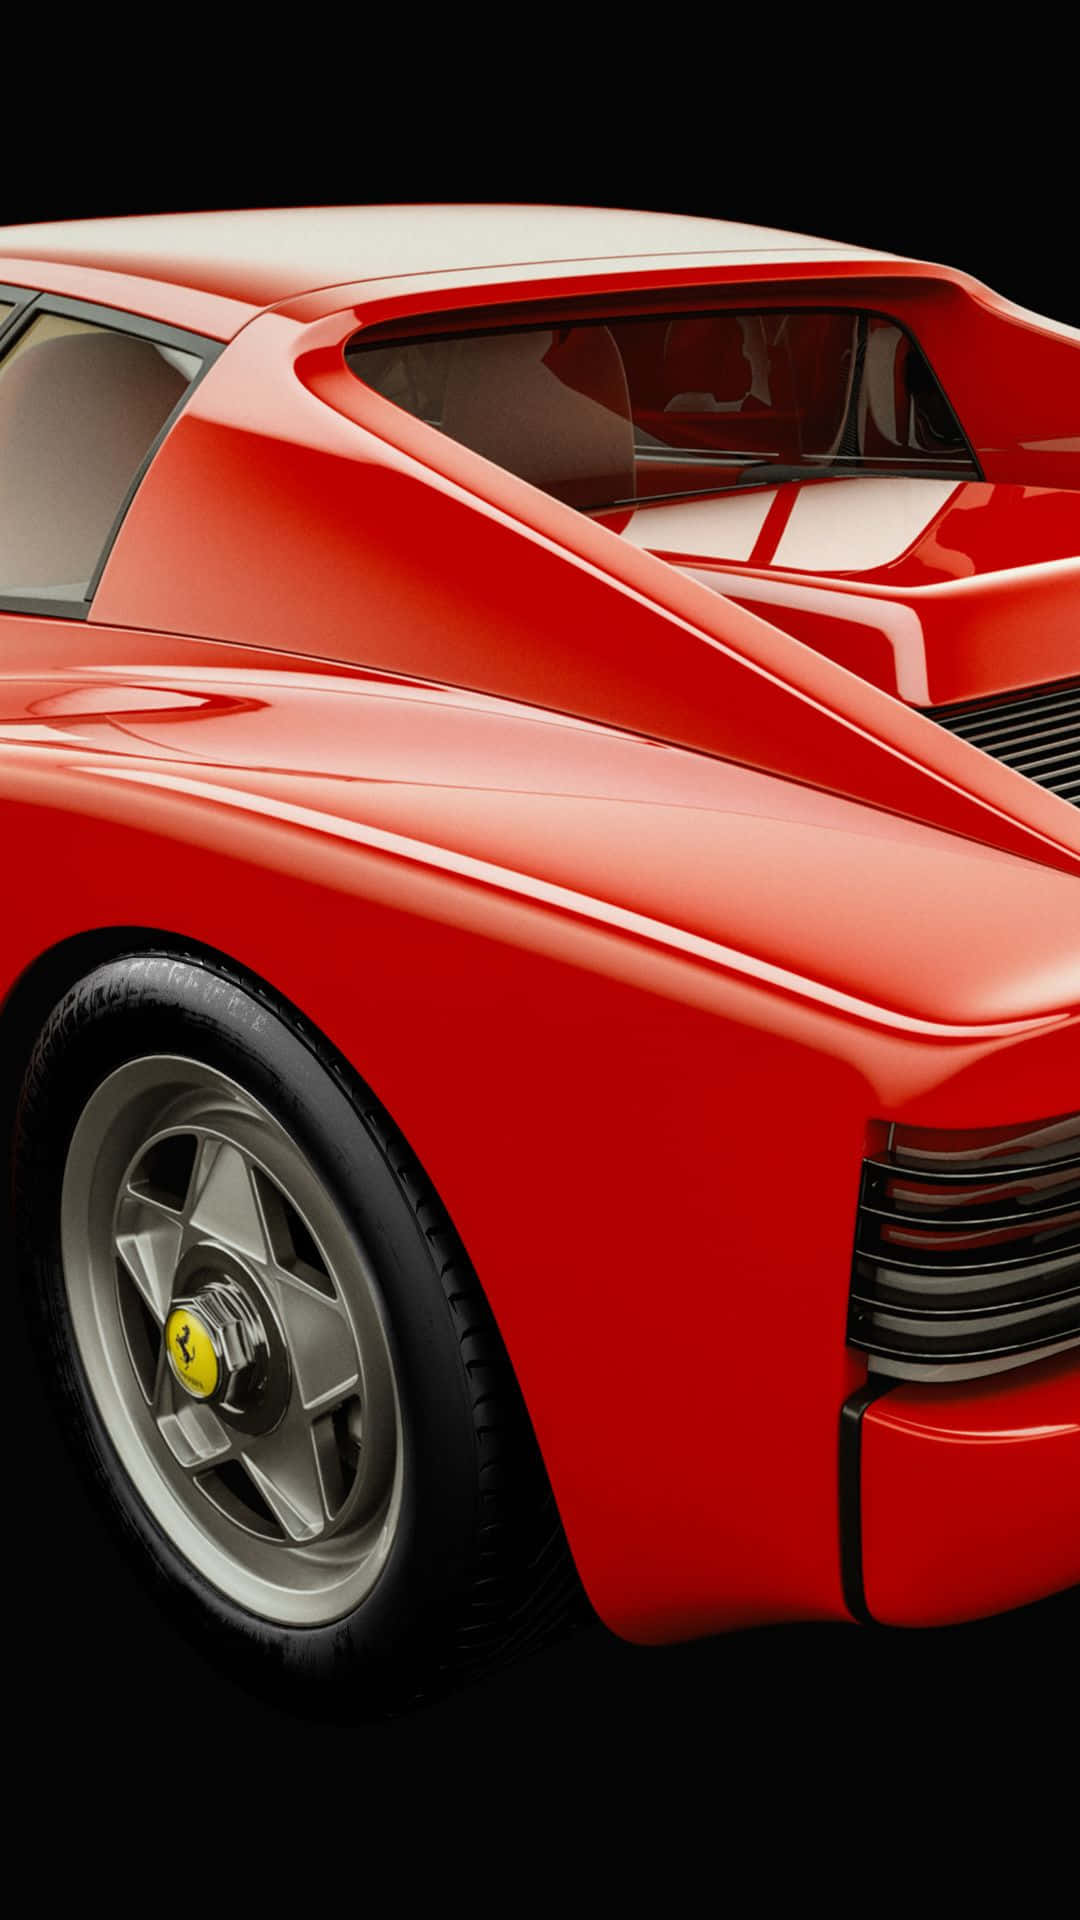 Stunning Red Ferrari Testarossa in Motion Wallpaper